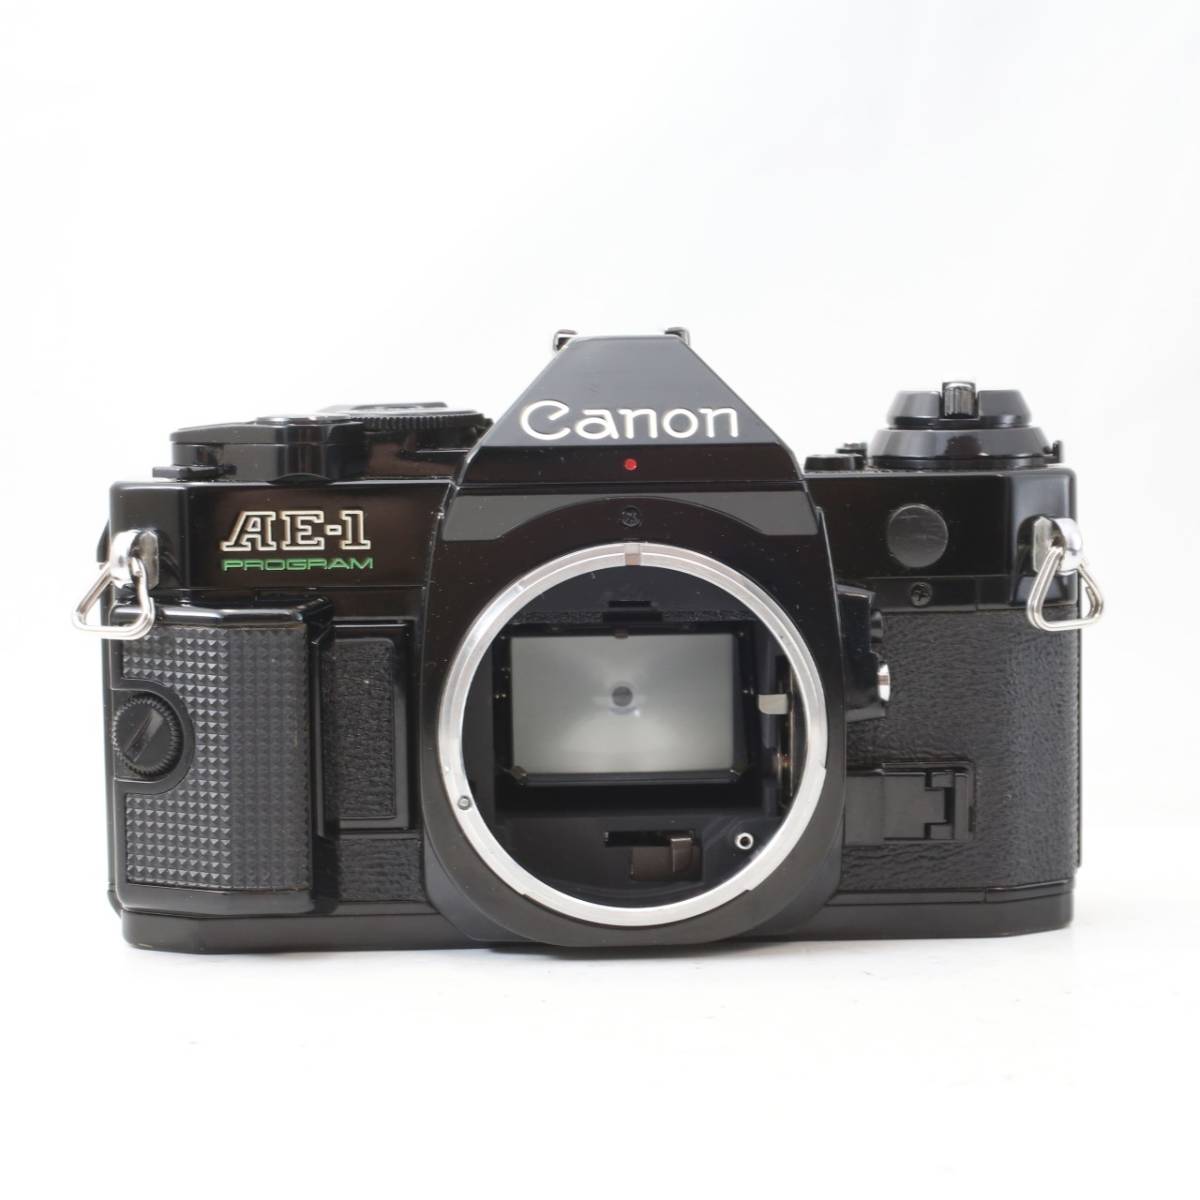 【シャッター/露出計OK】キャノン Canon AE-1 PROGRAM /NEW FD 50mm F1.8 レンズセット (S485)_画像8